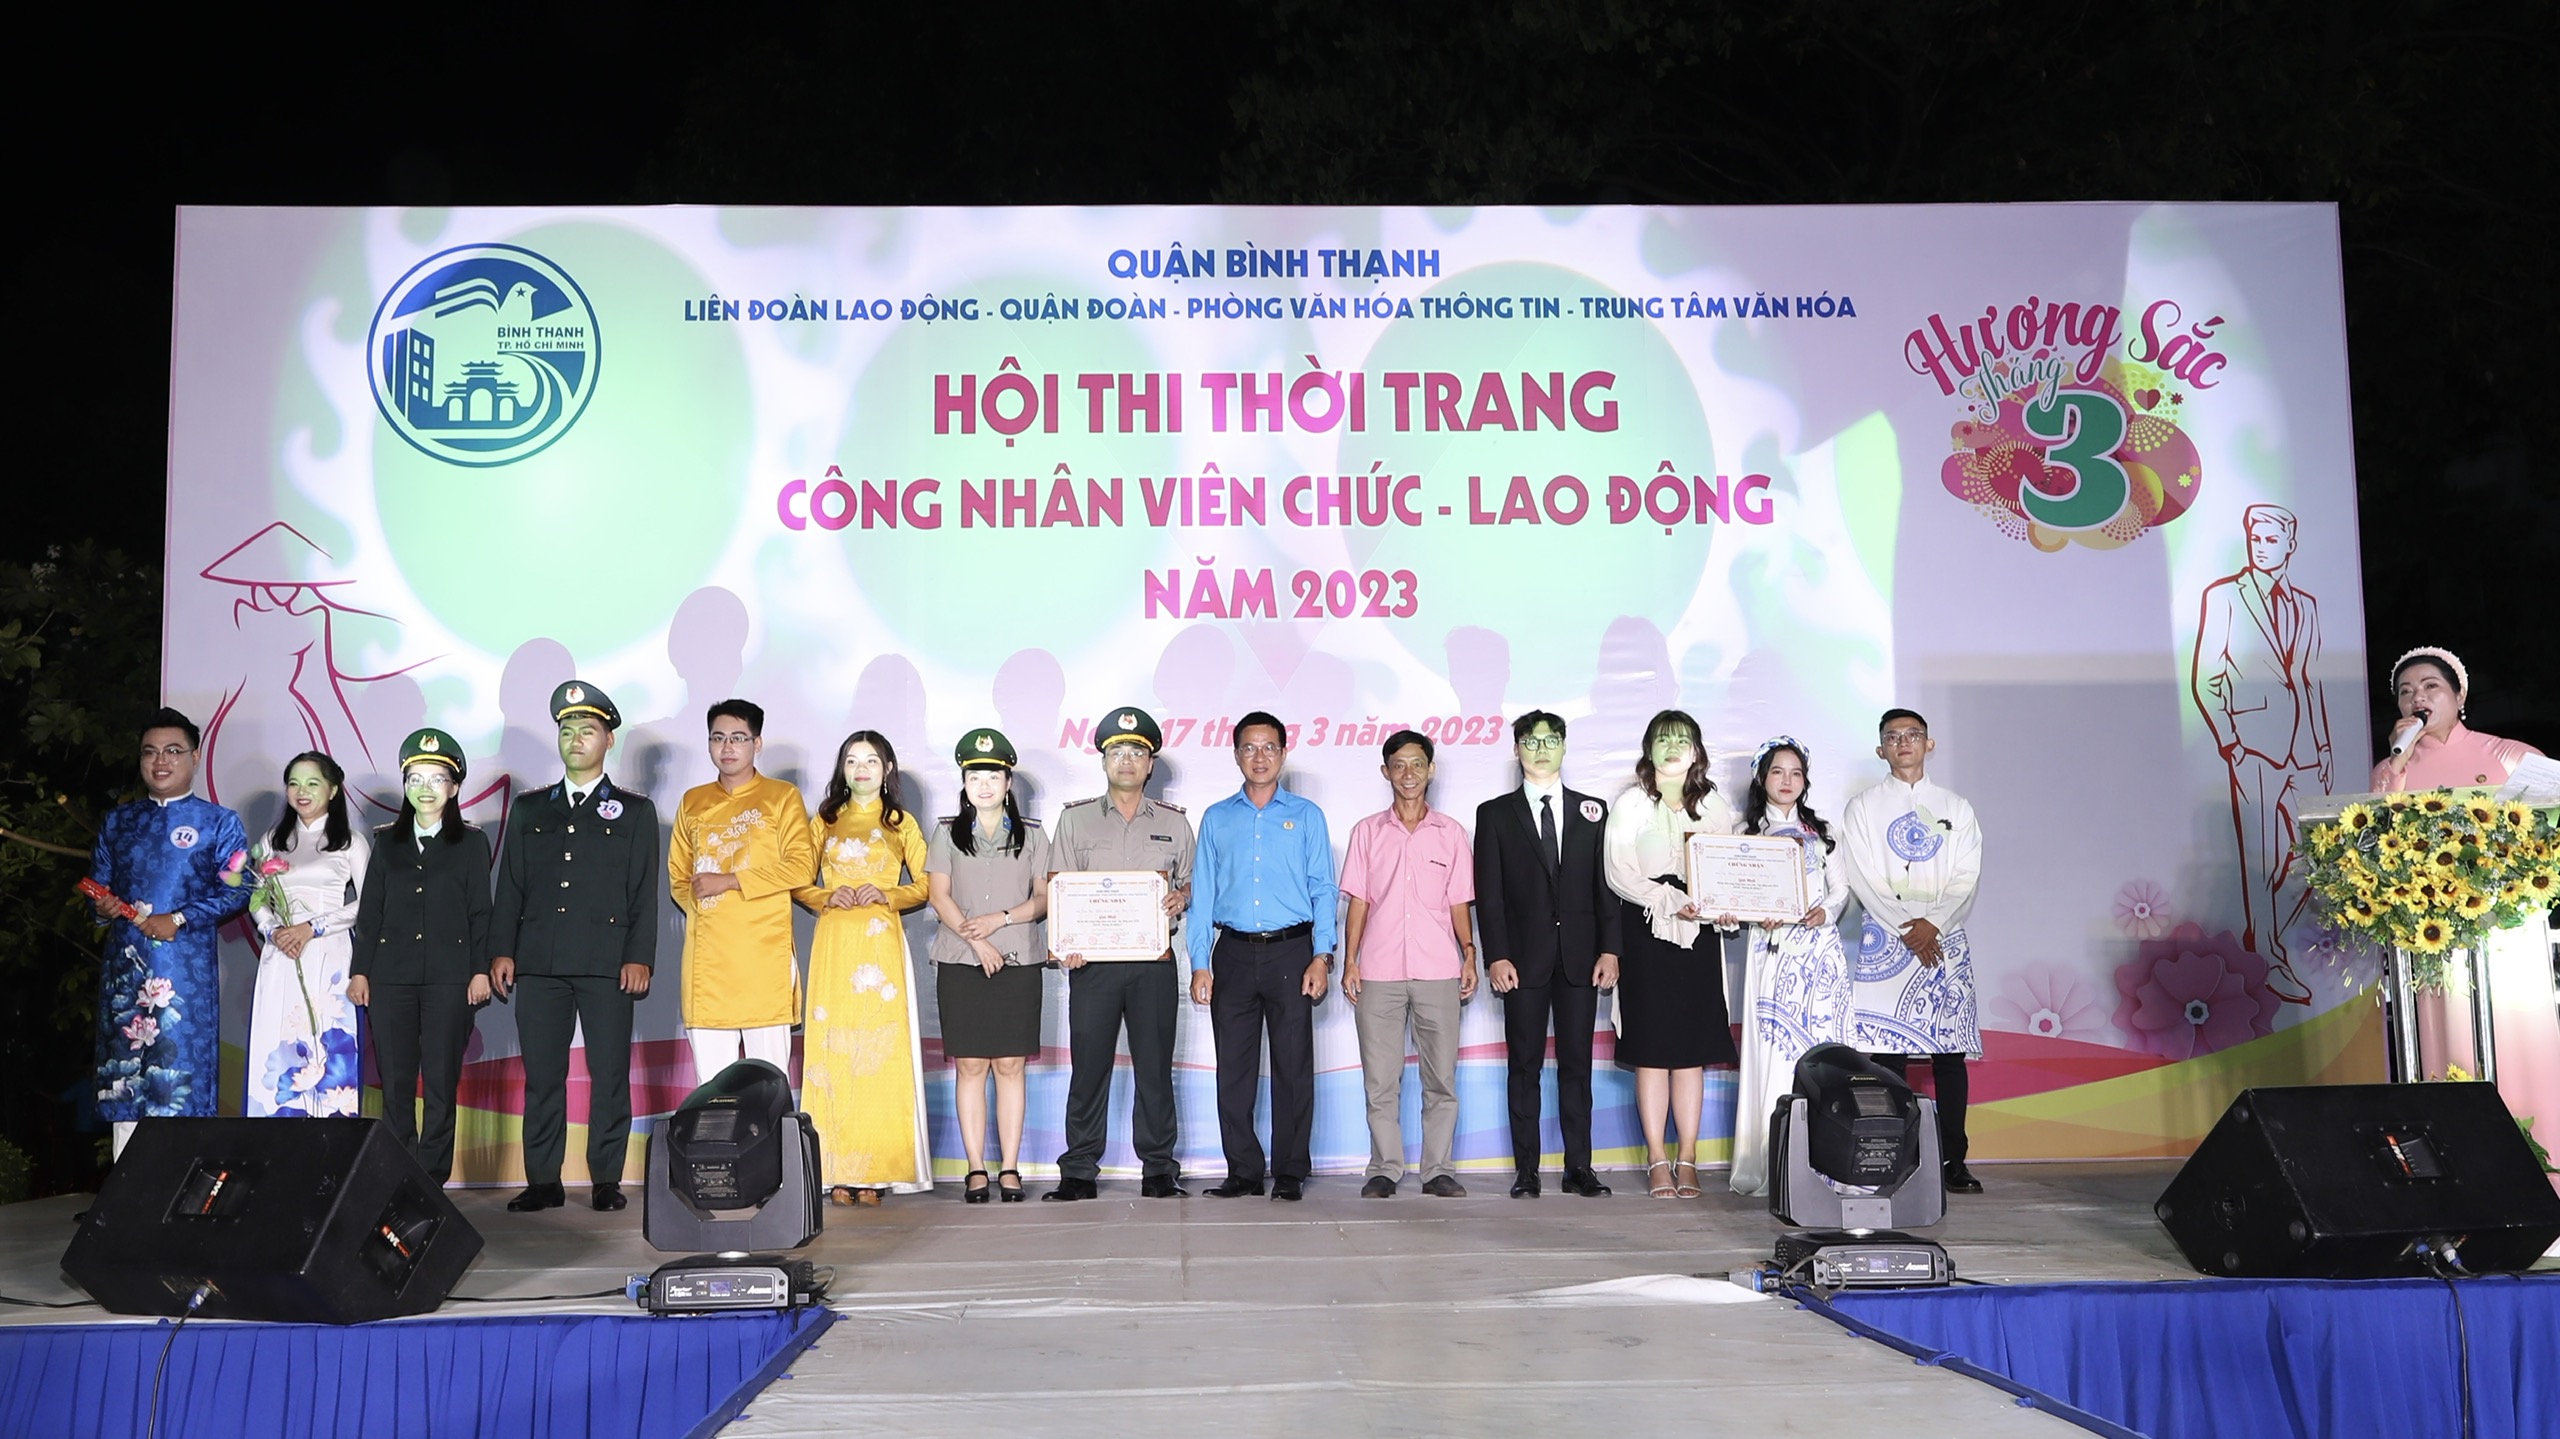 Chi cục THADS quận Bình Thạnh đạt giải nhất Hội thi thời trang công nhân viên chức lao động năm 2023